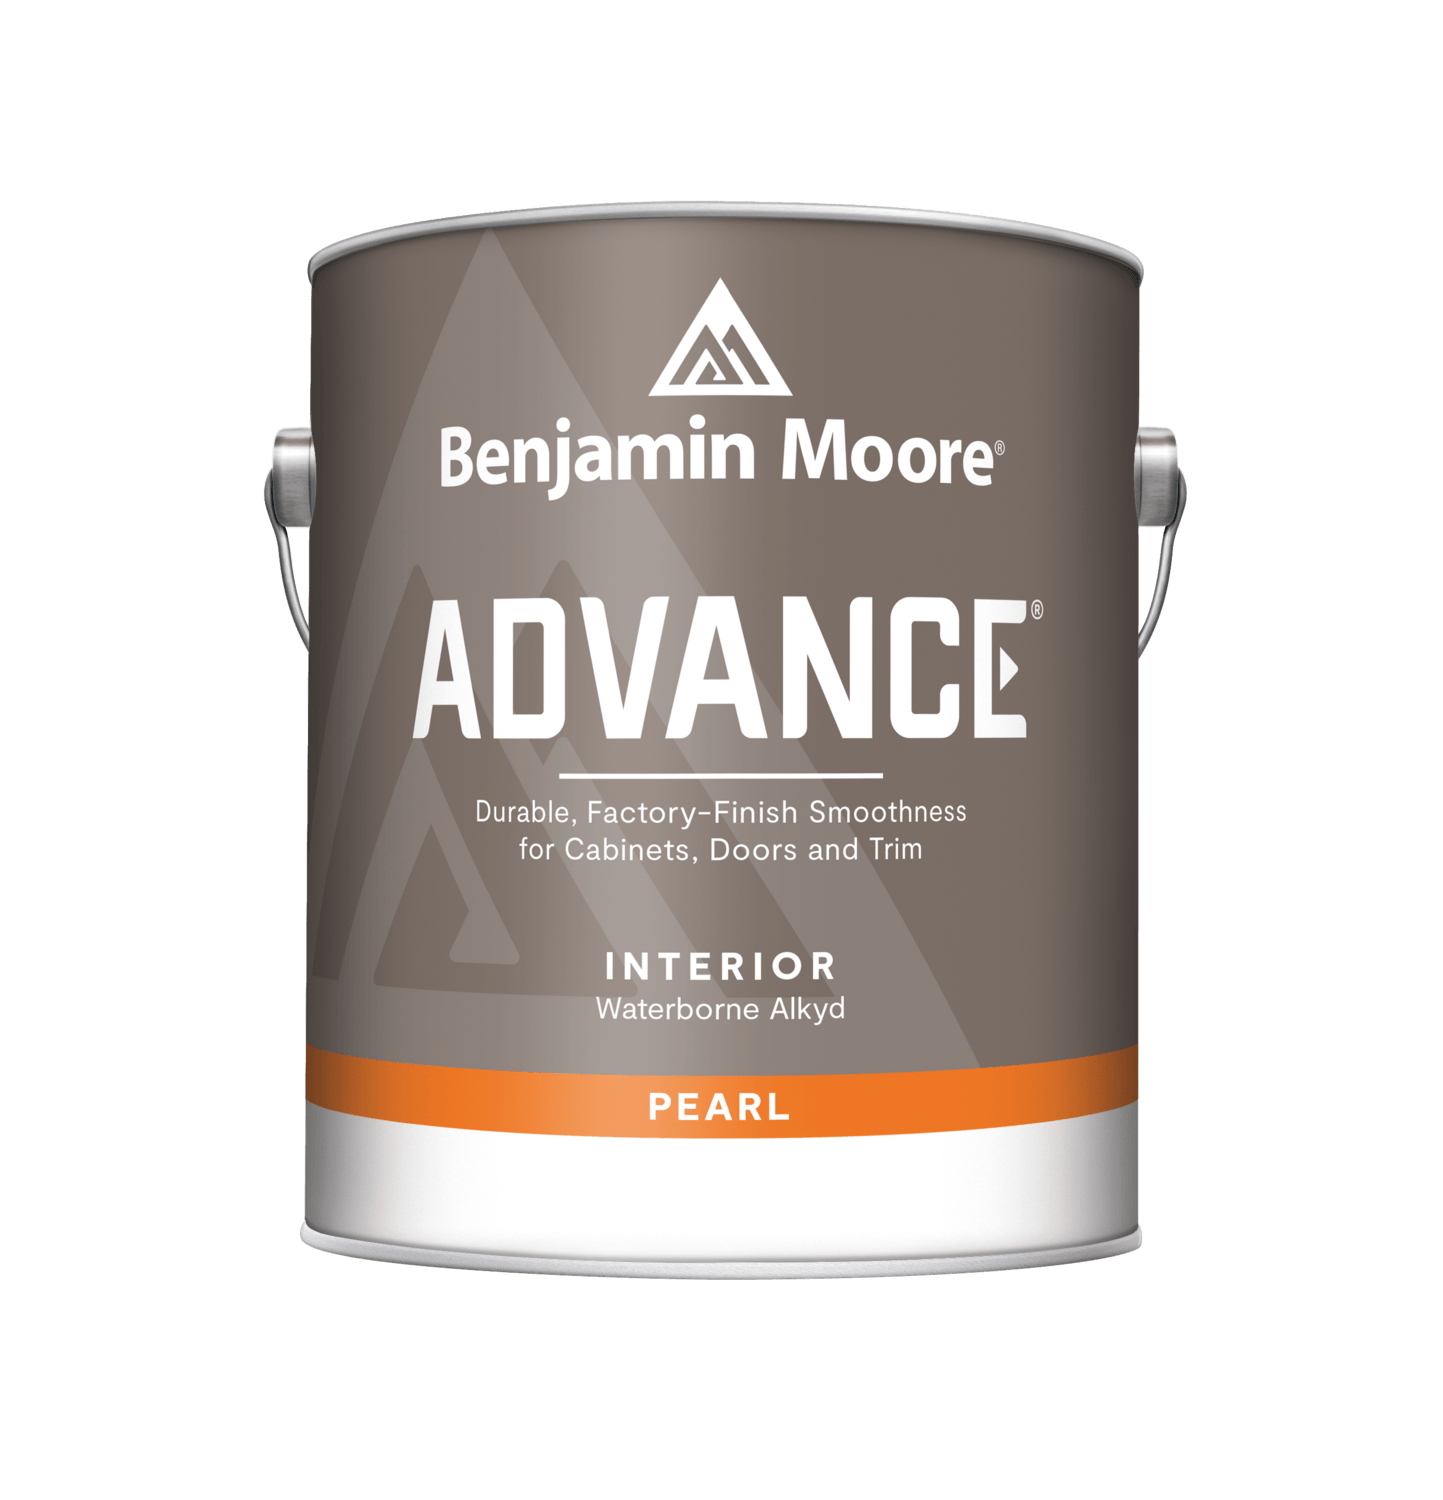 Benjamin Moore Advance Interior Pearl Finish - 1 Gallon